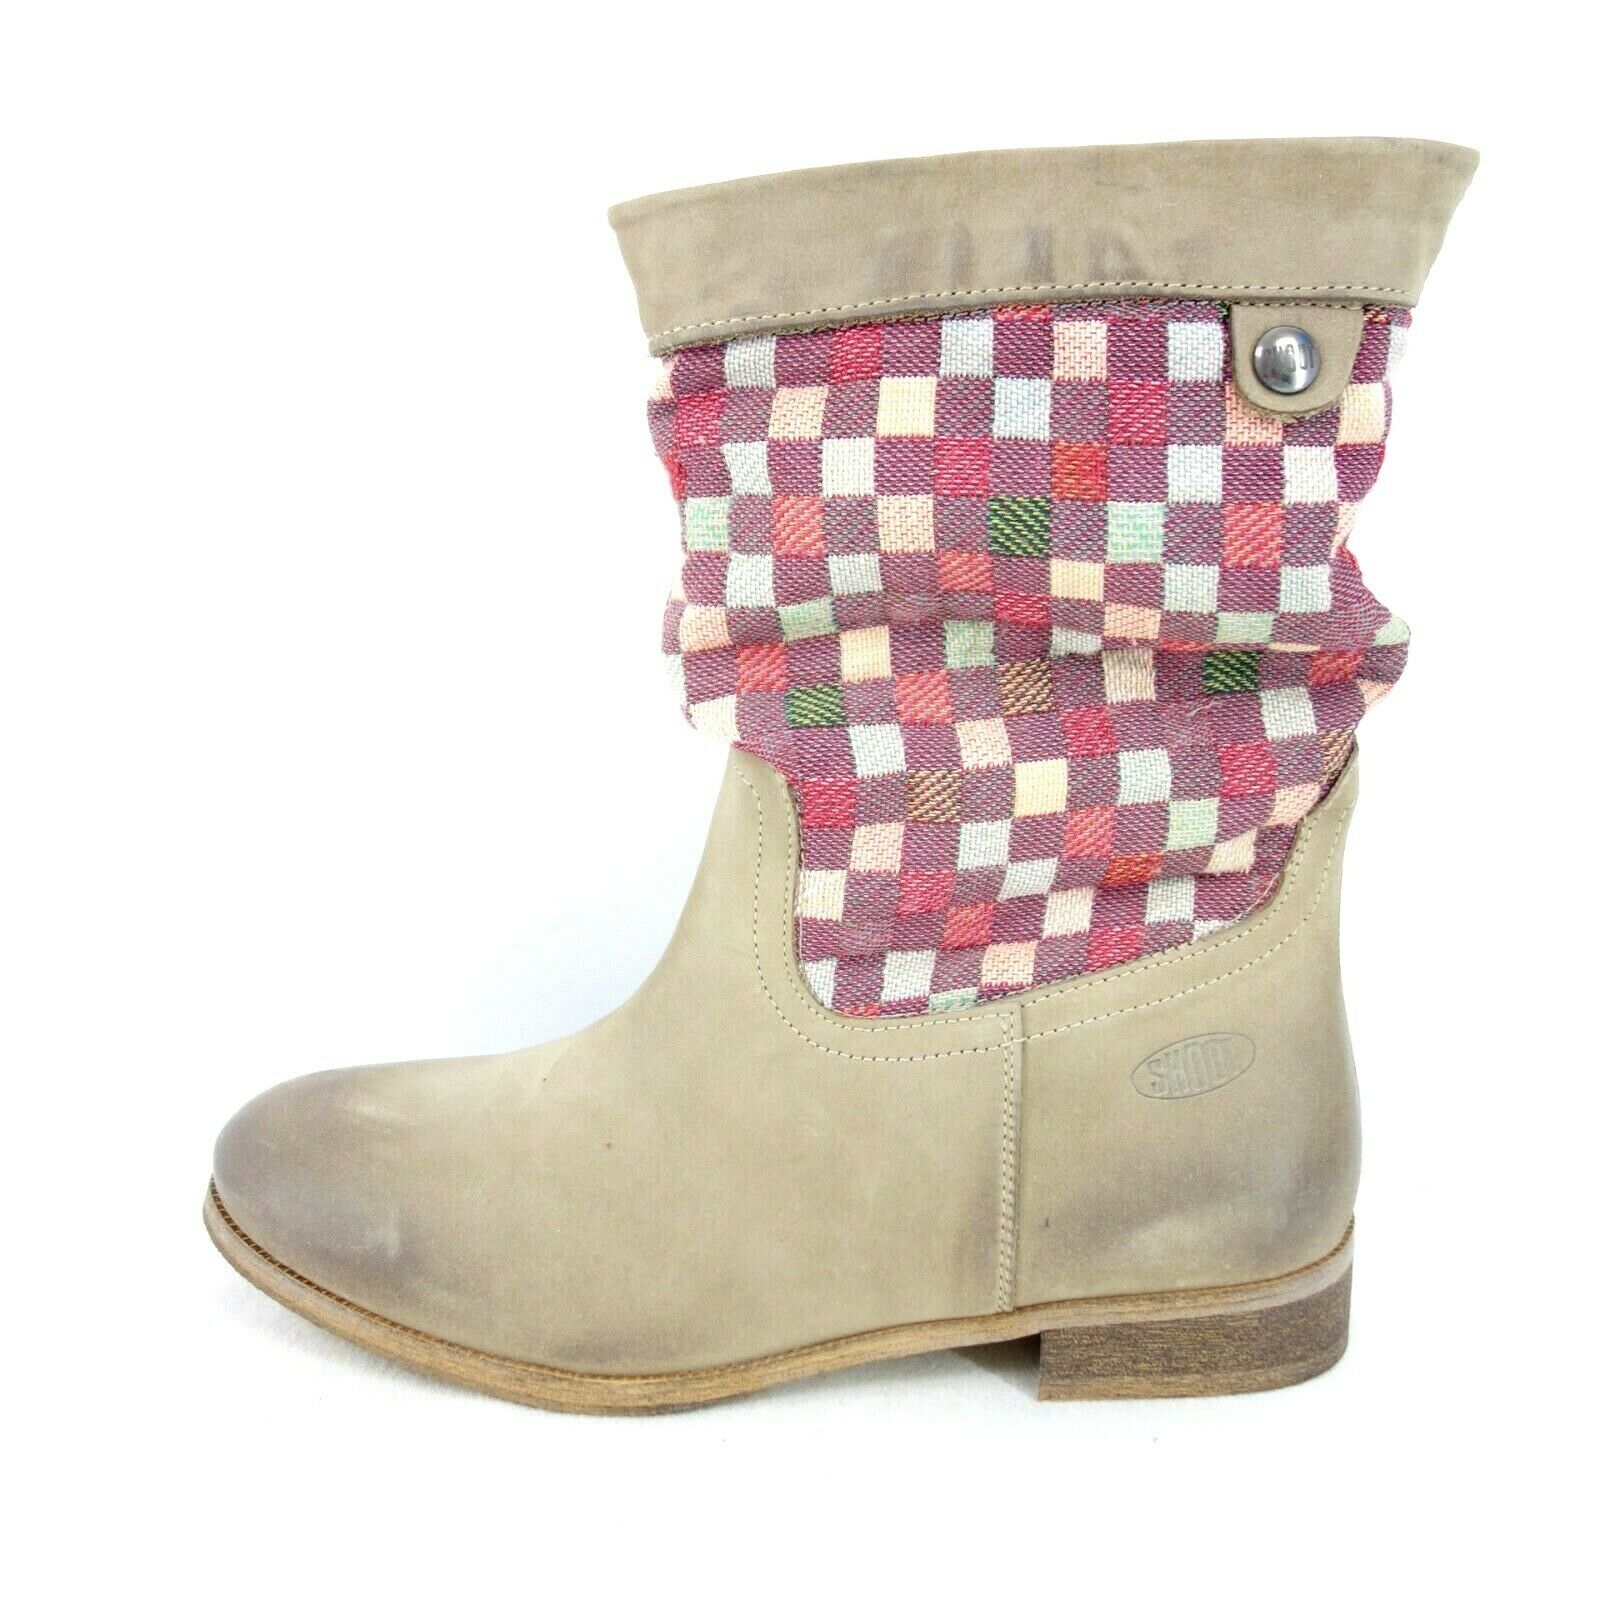 Shoot Damen Schuhe Boots Bootie Stiefeletten Leder Taupe Schaft Textil Np 99 Neu - EUR 39